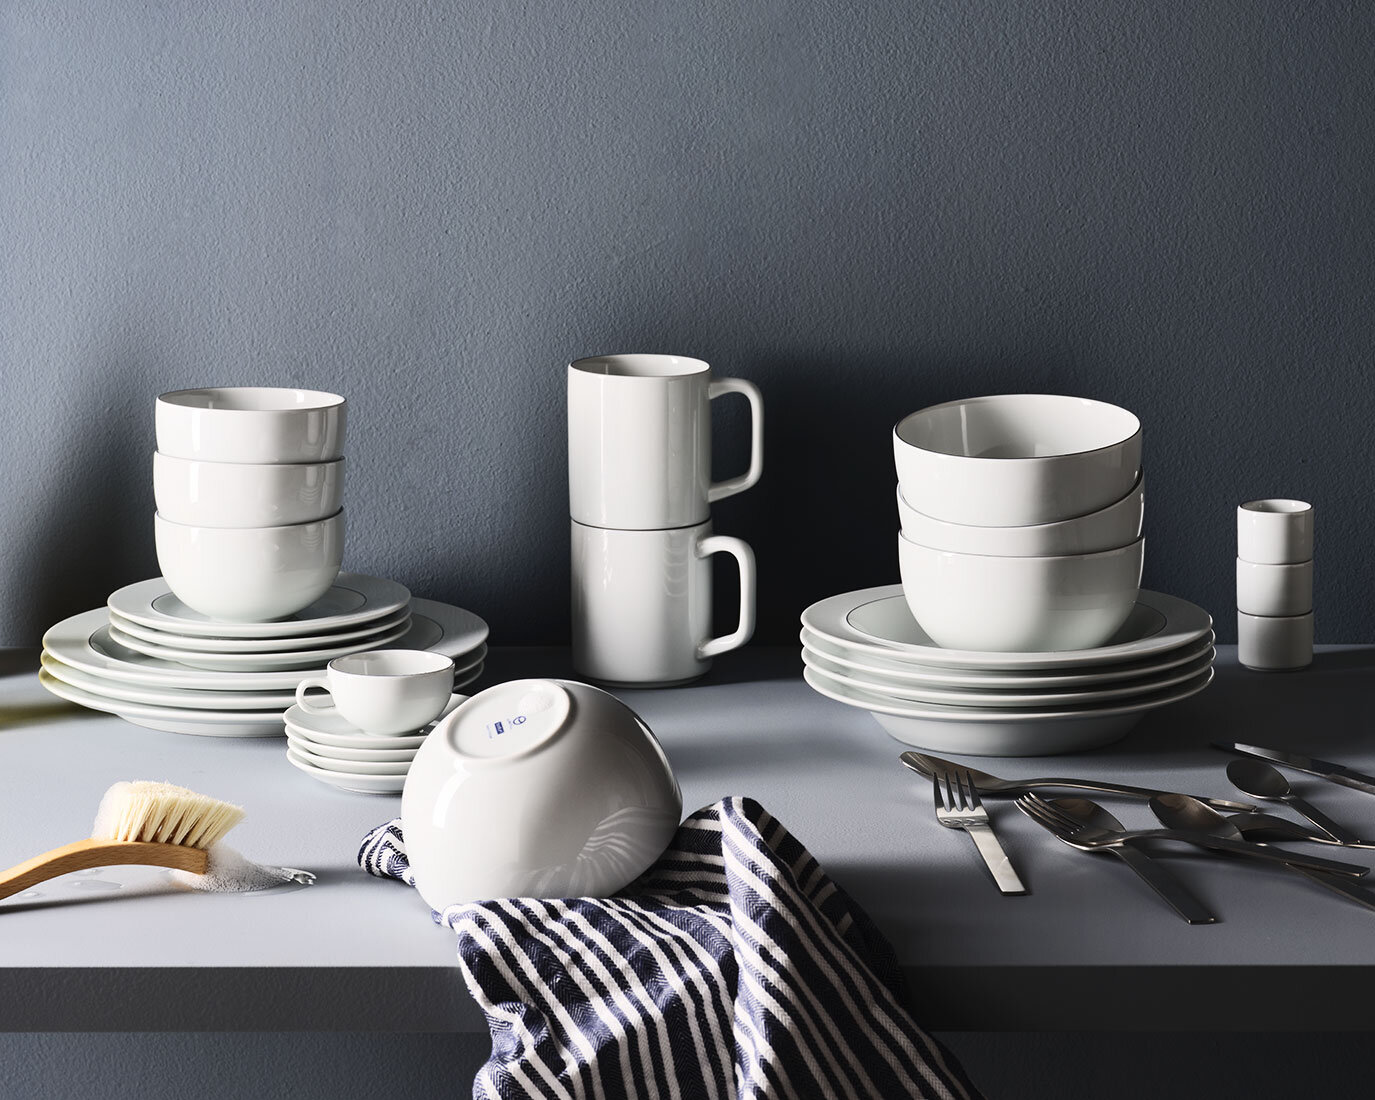   Bodum    Re-launch of porcelain series        